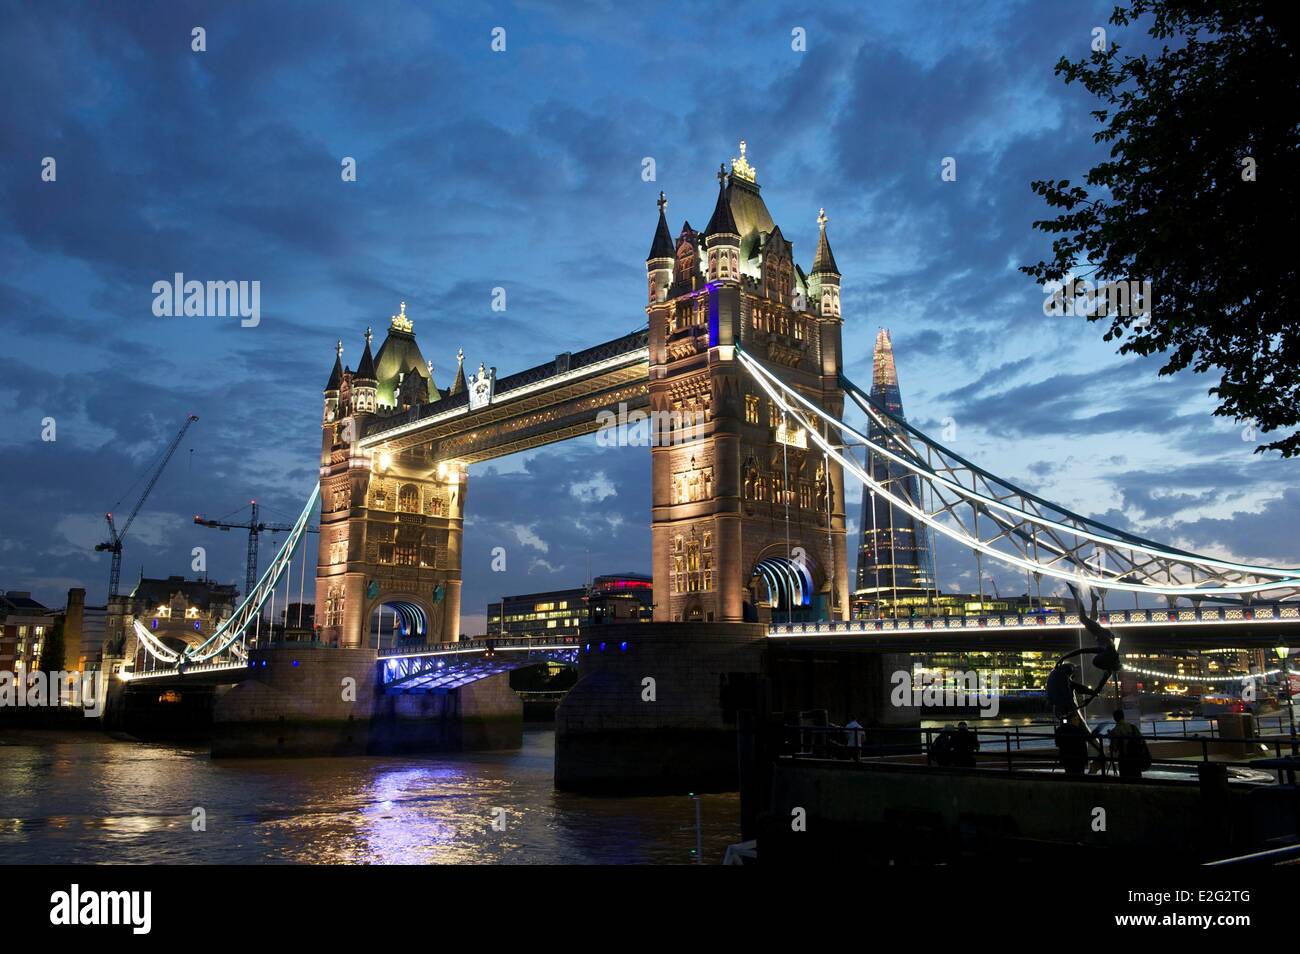 Regno Unito Londra Tower Bridge un ponte che attraversa il Tamigi tra i distretti di Southwark e Tower Hamlets e il Foto Stock